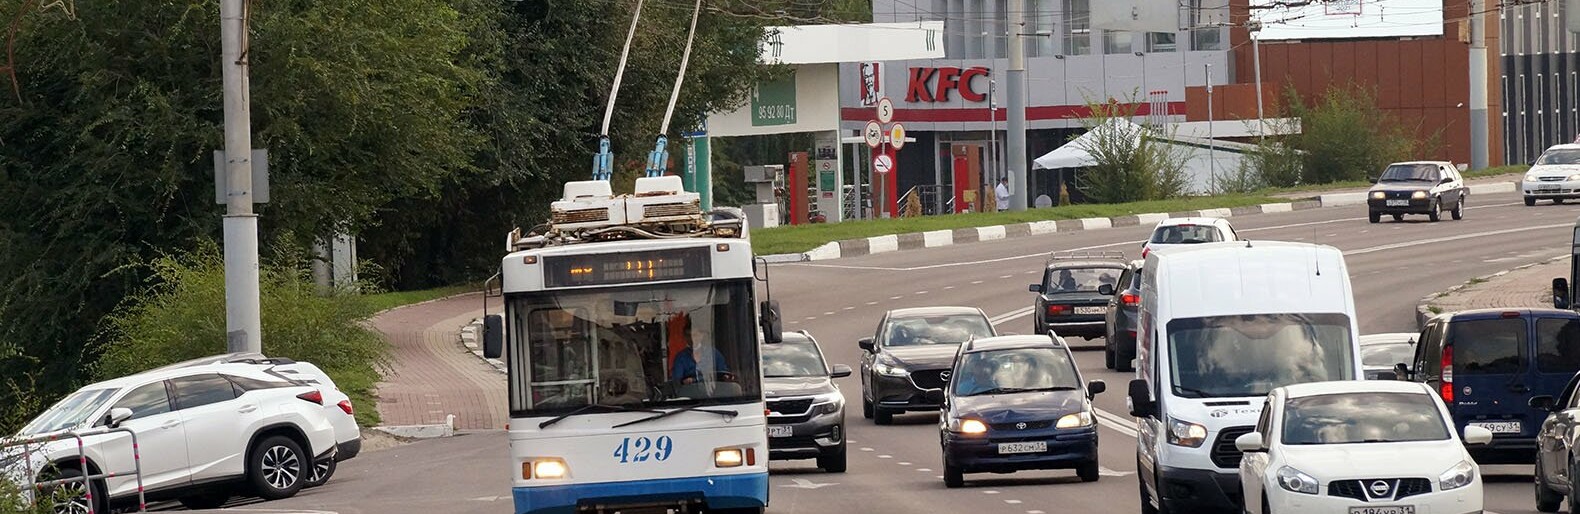 Белгородские власти опровергли данные о принуждении бюджетников к комментариям против троллейбусов